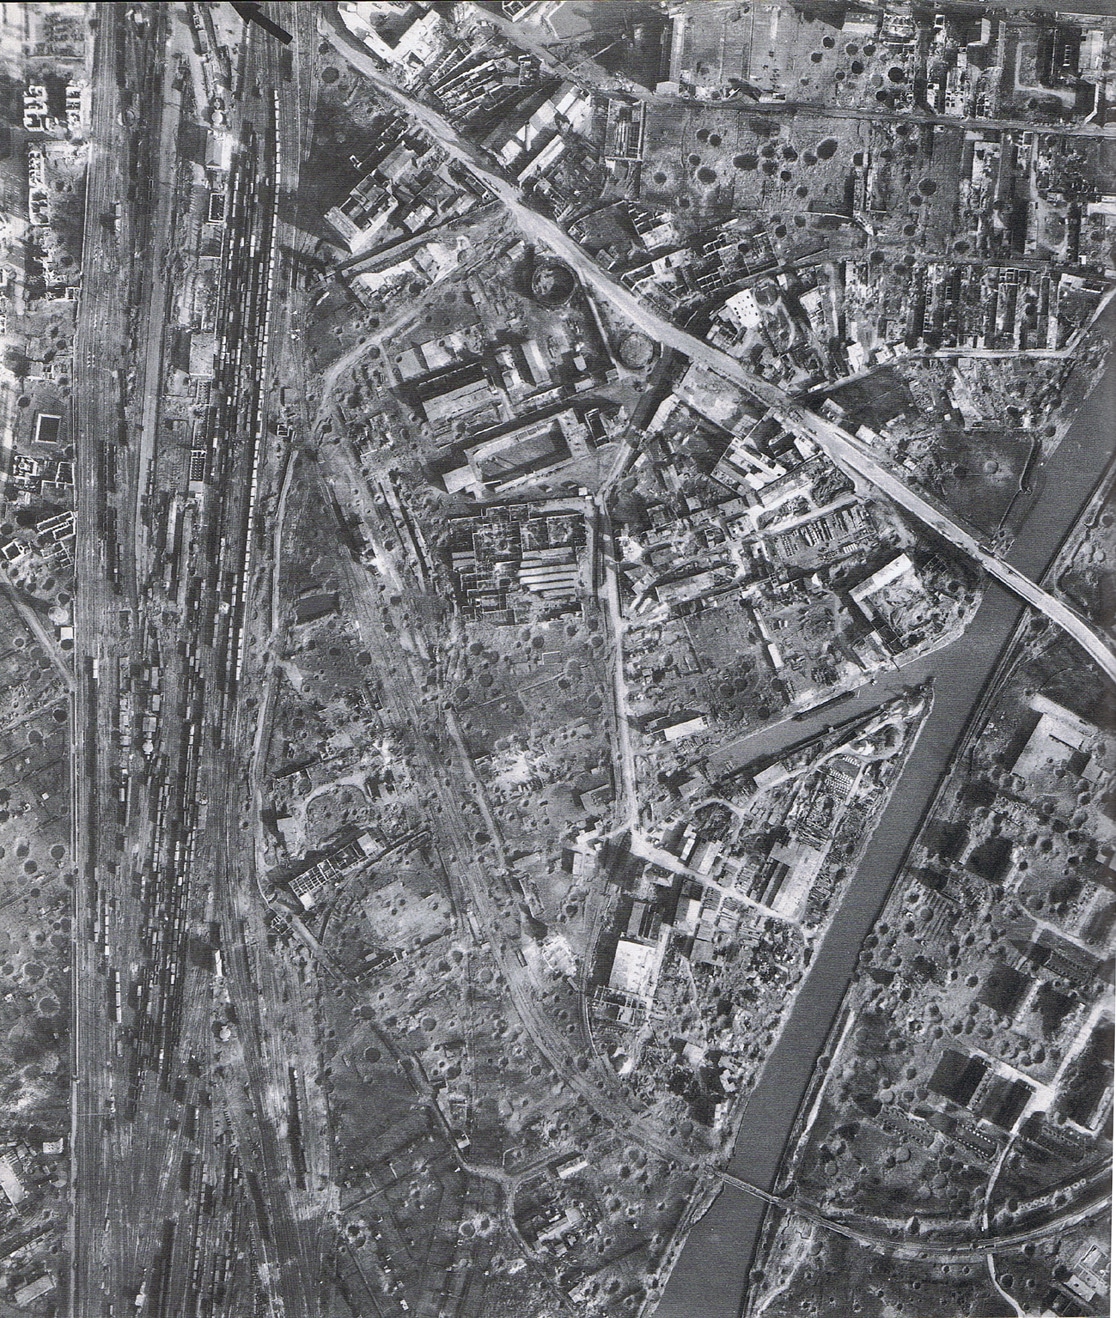 Sistema ferroviario de Münster el 21 de marzo de 1945, después que el 17 fuera bombardeado por 170 B-24 Liberators